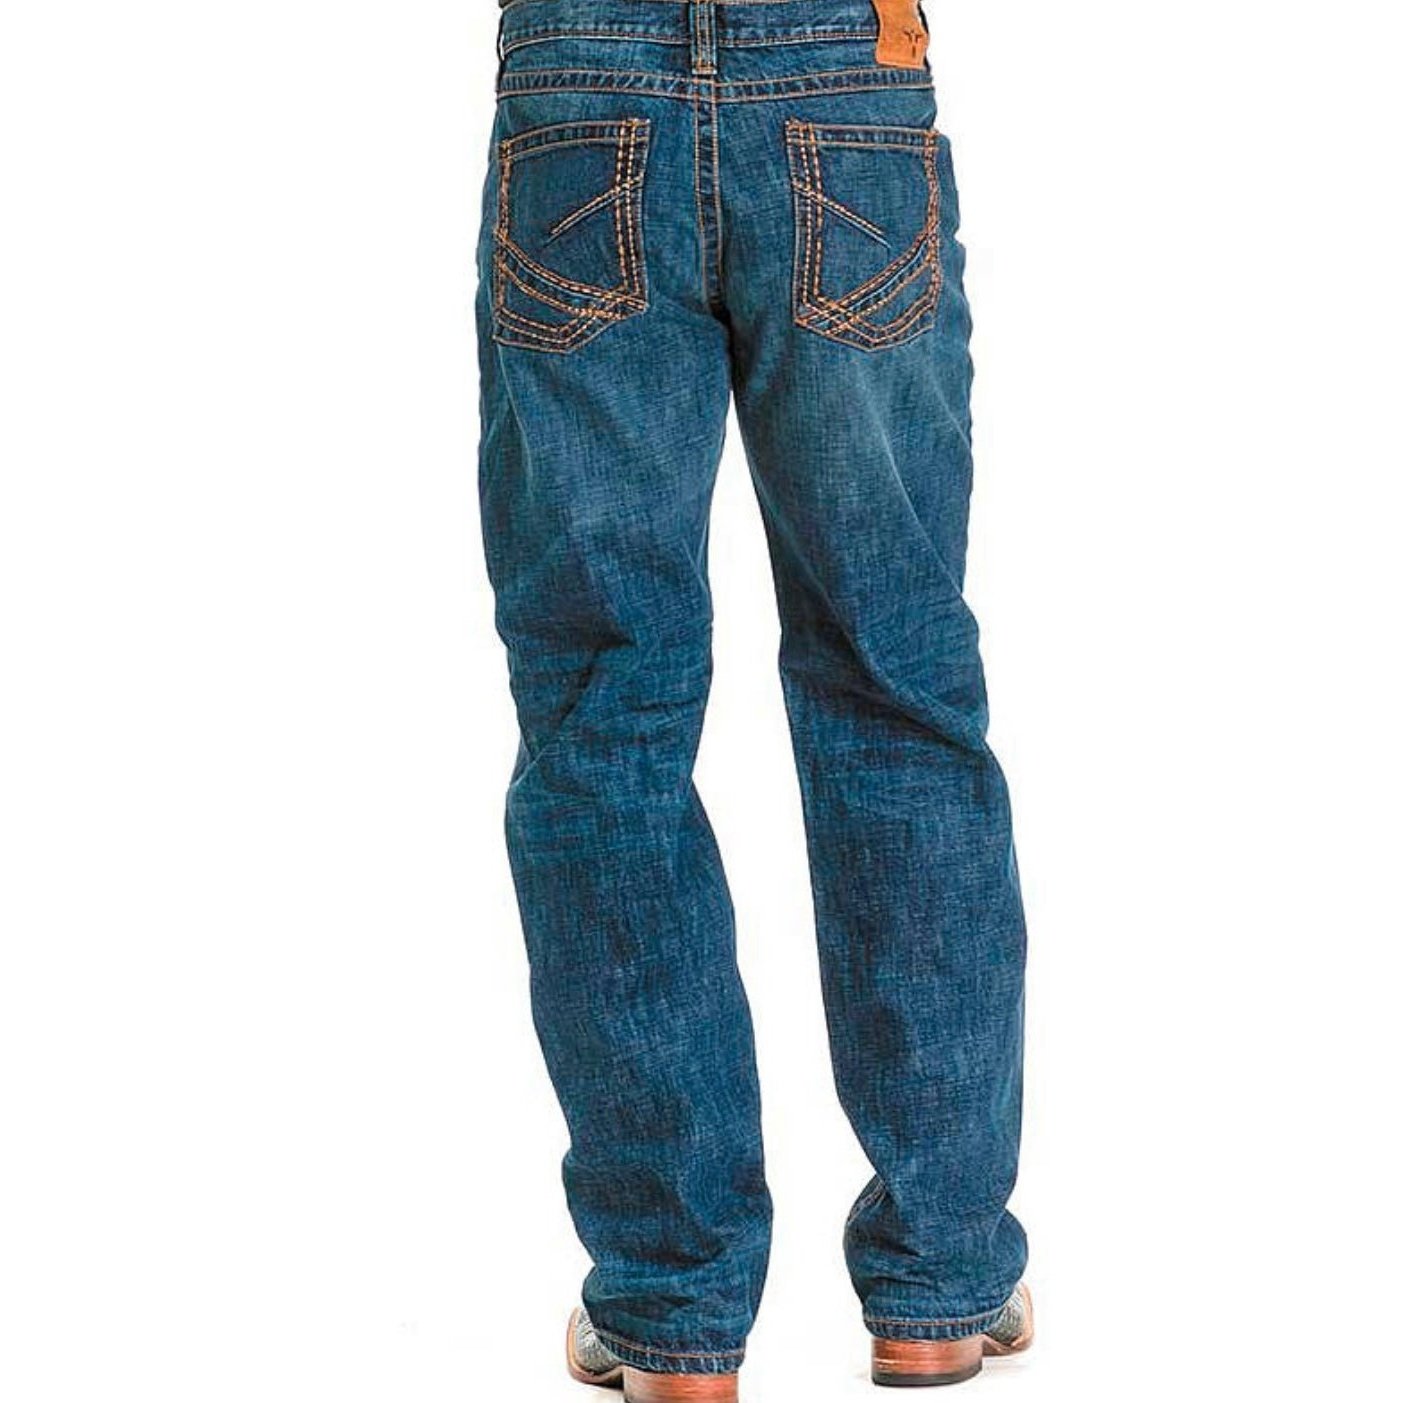 Wrangler Men's Jeans 20X Extreme Relaxed 33LTDFT - Wrangler